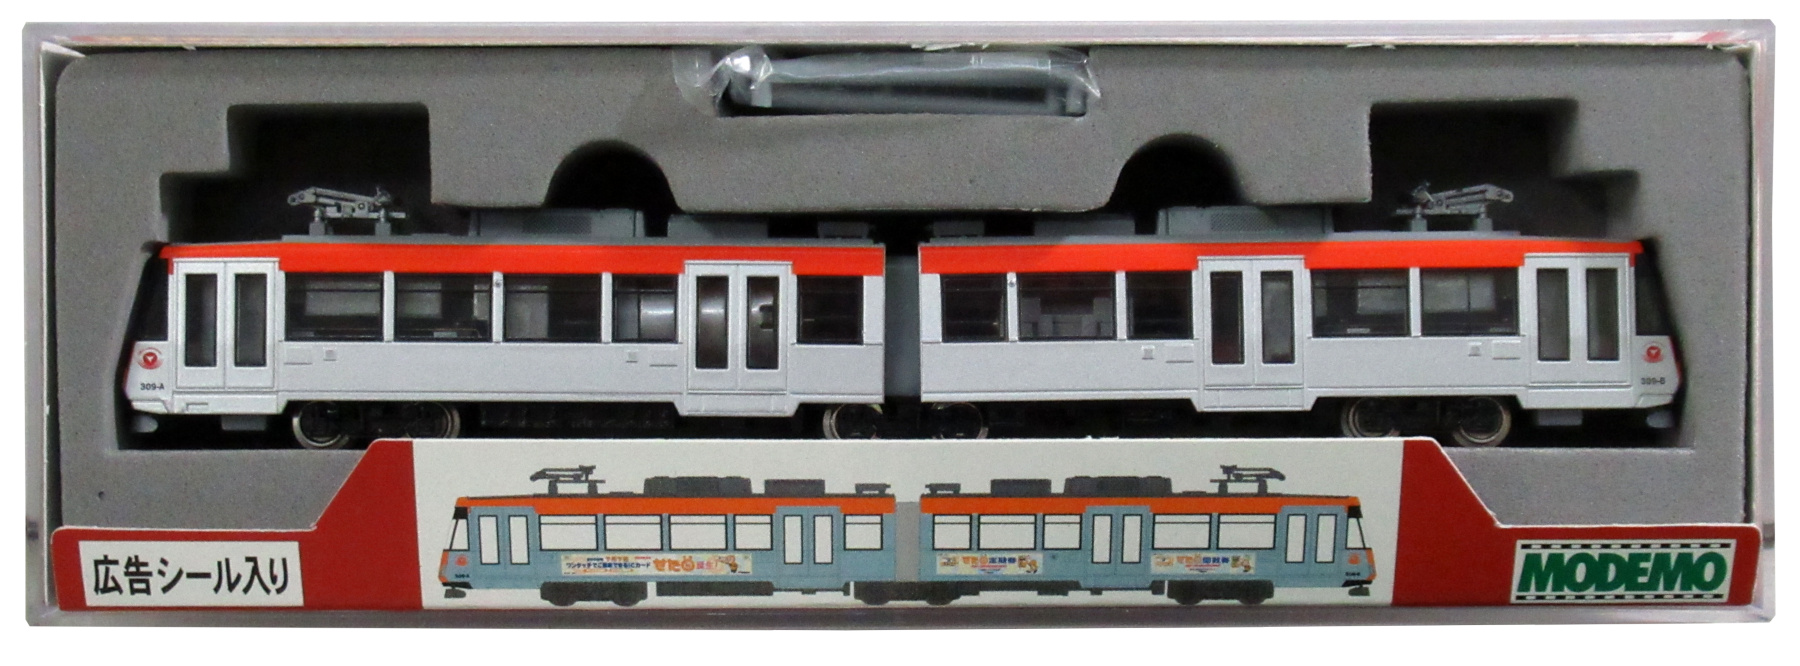 公式]鉄道模型(NT22東急300系 309F オレンジ “せたまる”)商品詳細 